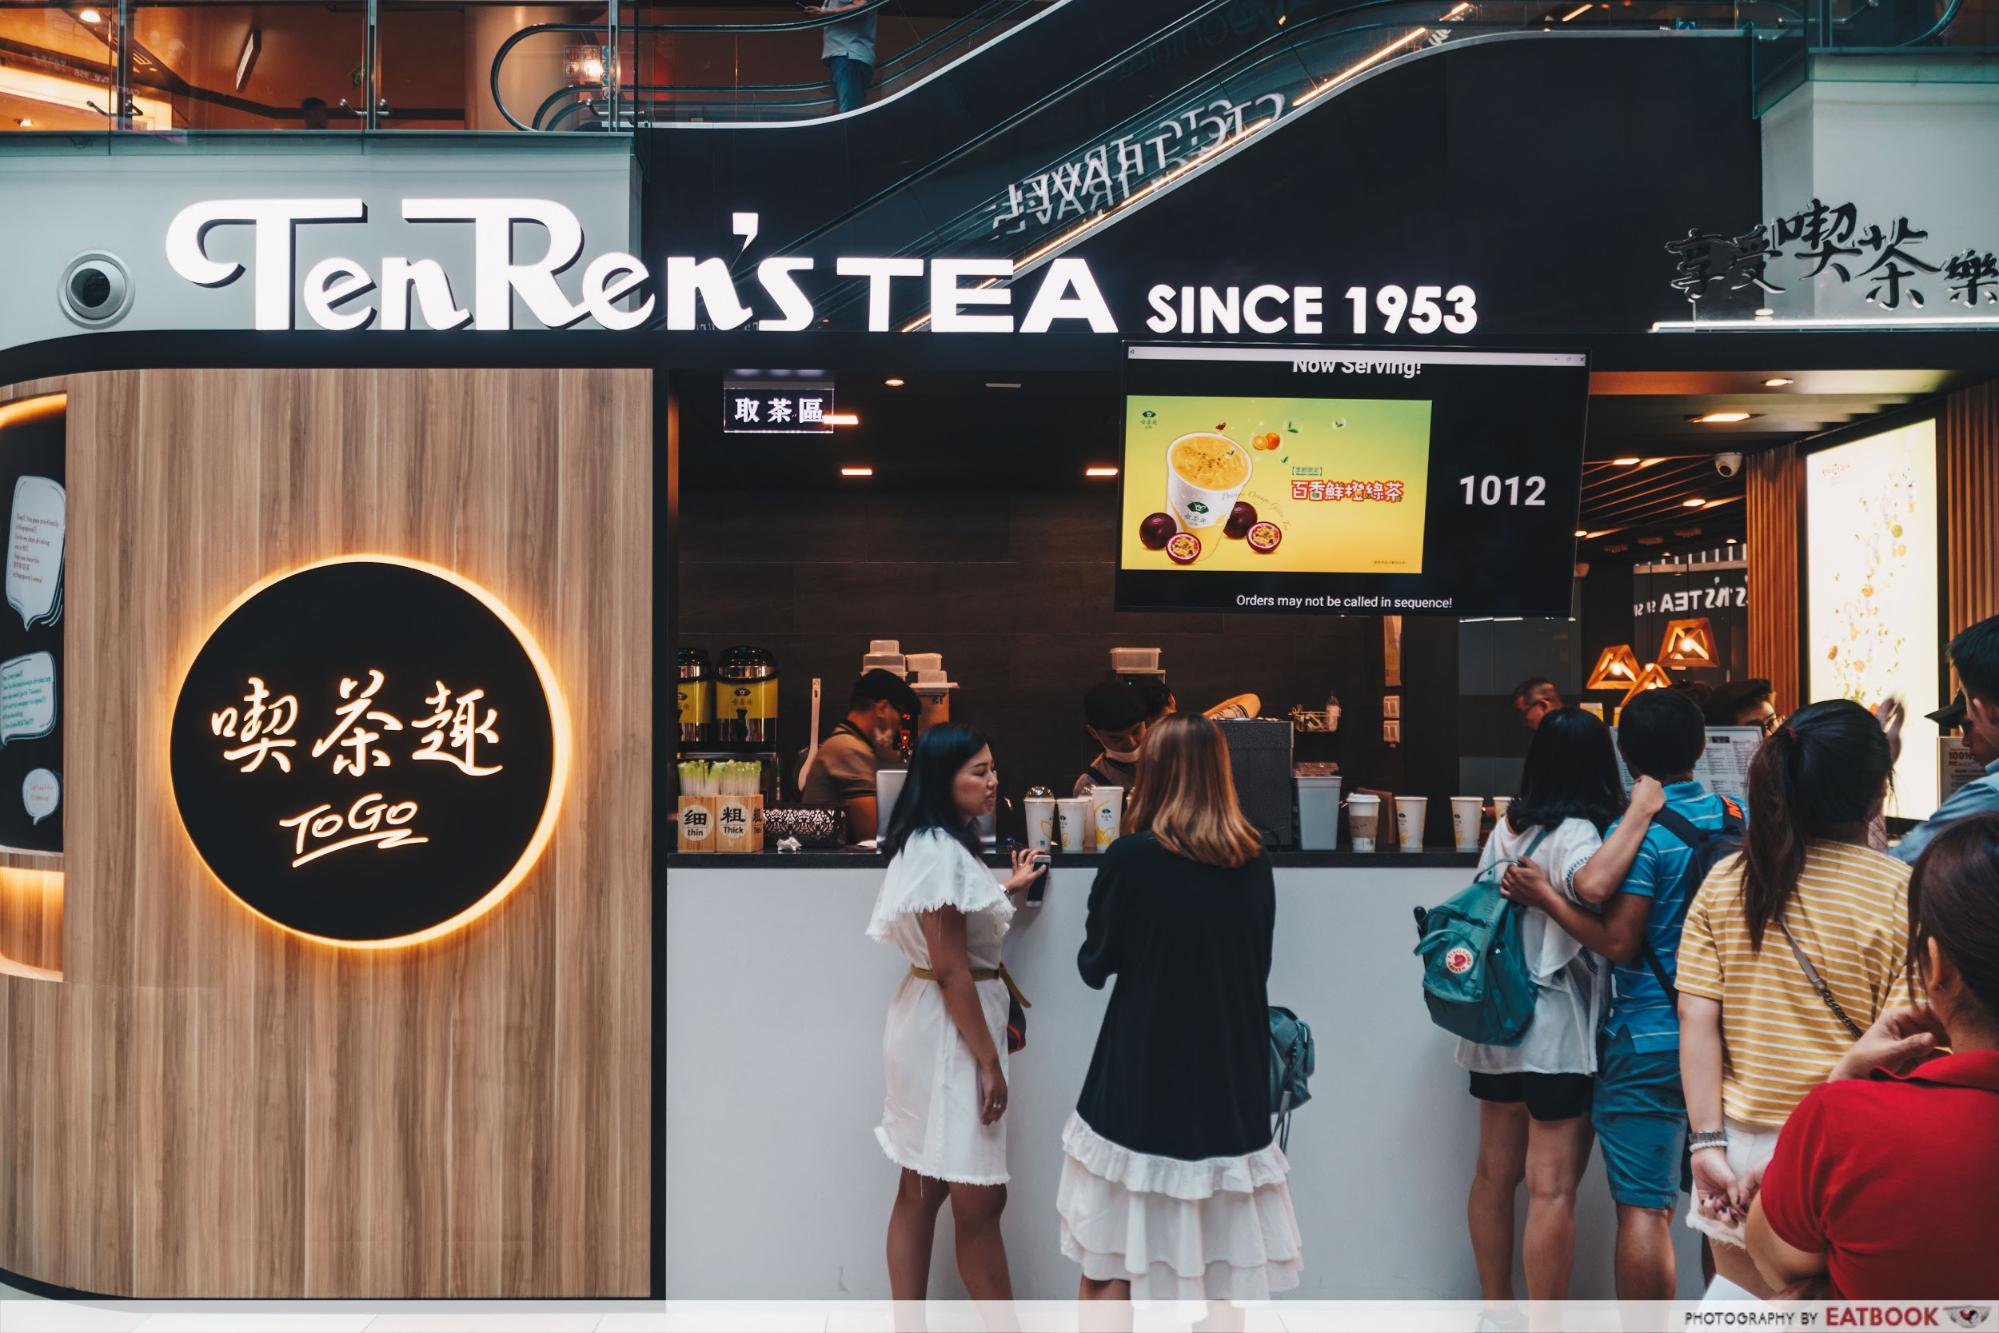 New Restaurants August 2018 - Ten Ren Tea Ambience